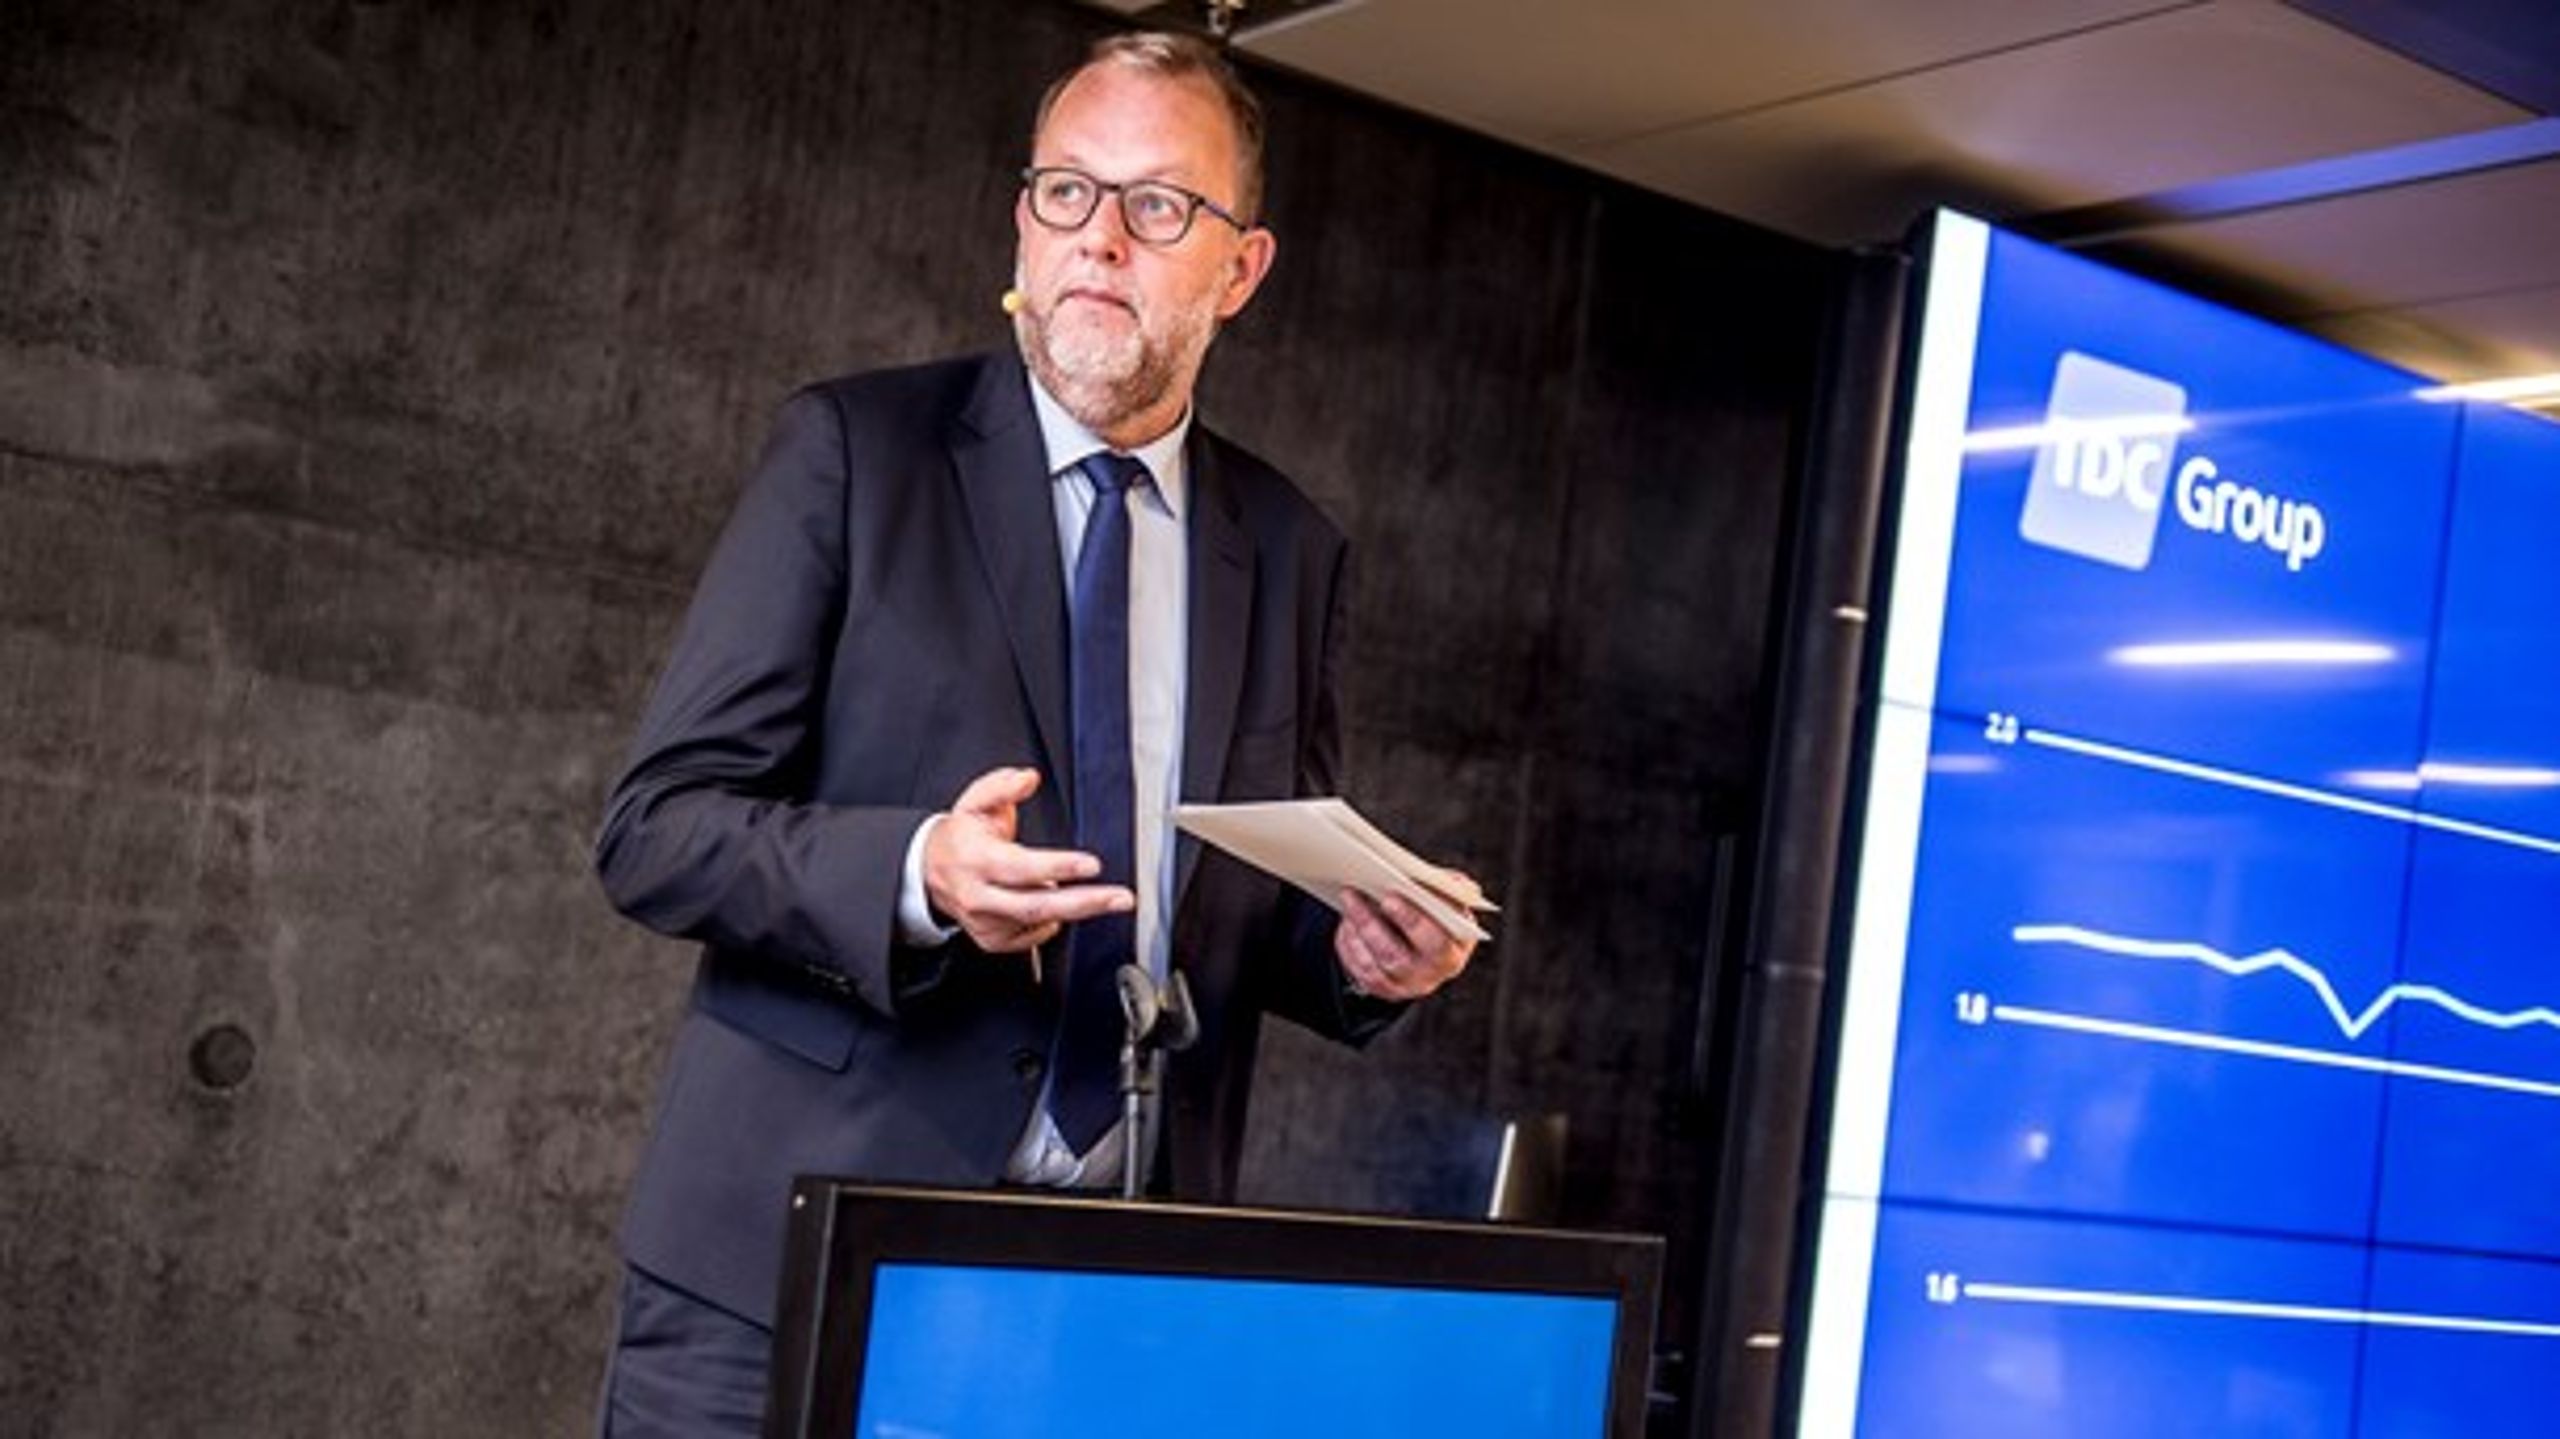 Tidligere har Lars Chr. Lilleholt (V) talt om 5G ved et showcase-arrangement i København. Mandag fremlægger han regeringens planer for netværket. (Foto: Mads Claus Rasmussen/Ritzau Scanpix).